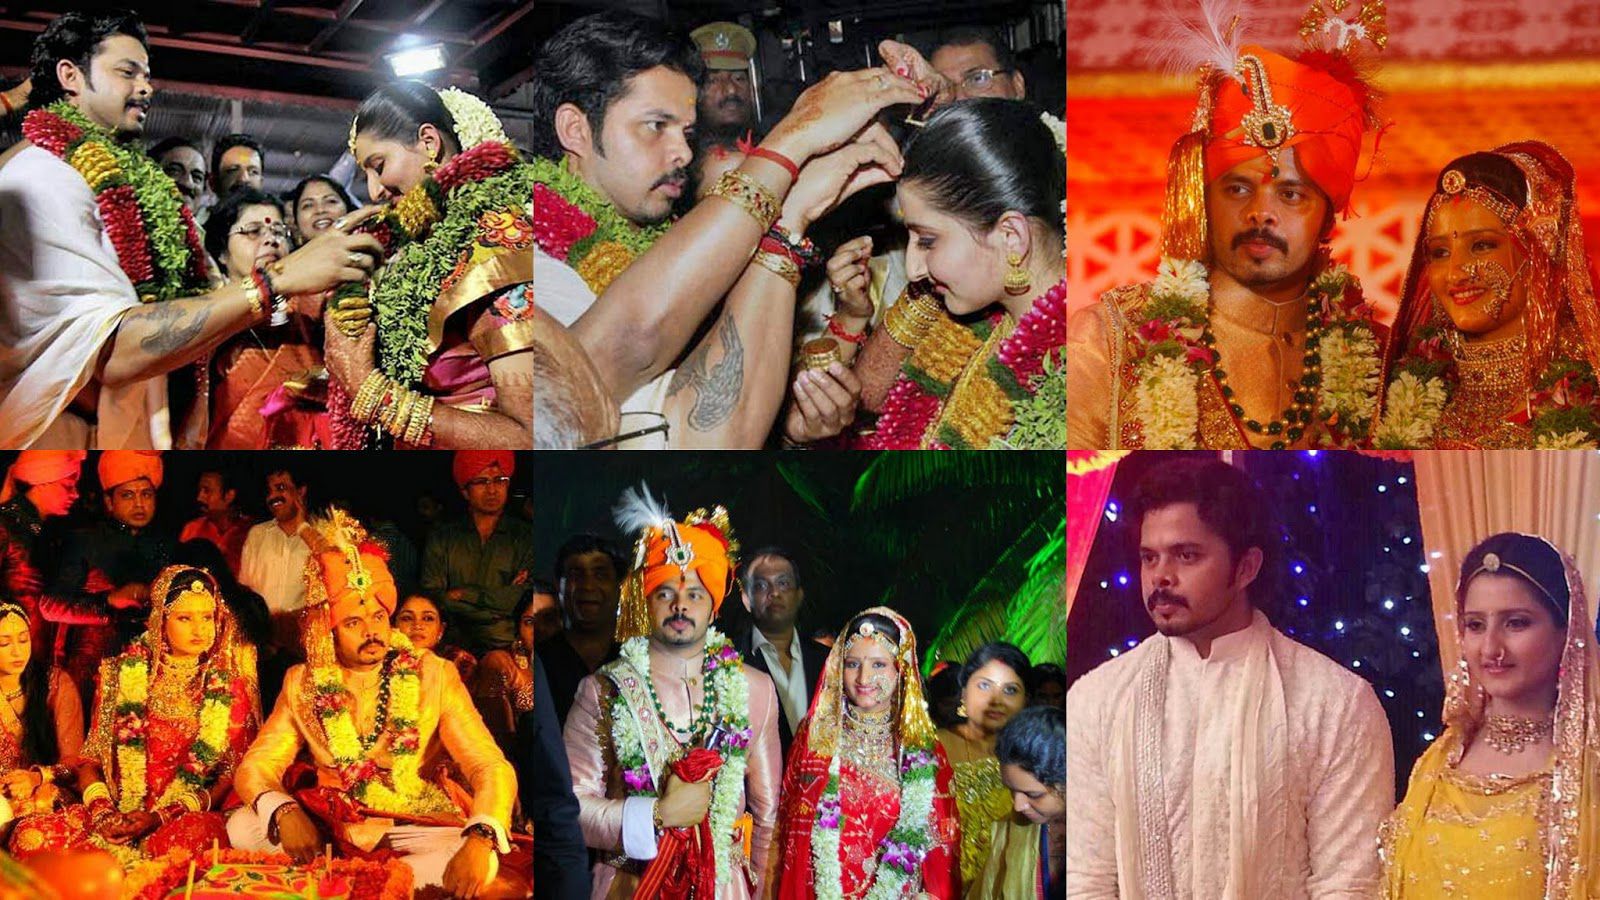 S Sreesanth and Bhuvneshwari Kumari Wedding Picture